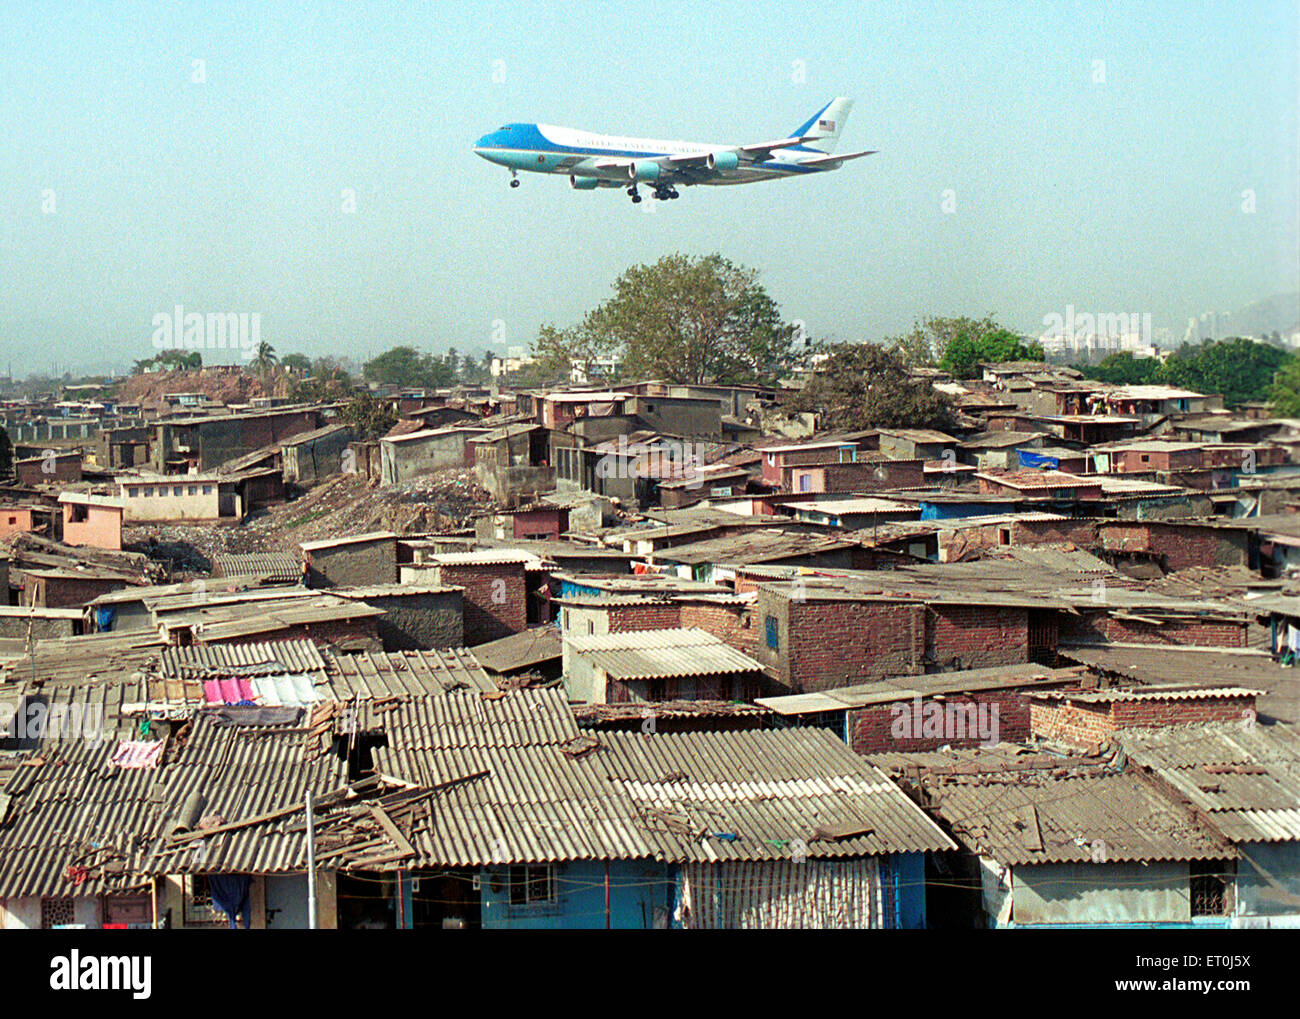 Air force one transporteur officiel Président américain survolant Chattrapati Shivaji bidonvilles dans l'aéroport International de Bombay Mumbai Inde - DPV 153869 Banque D'Images